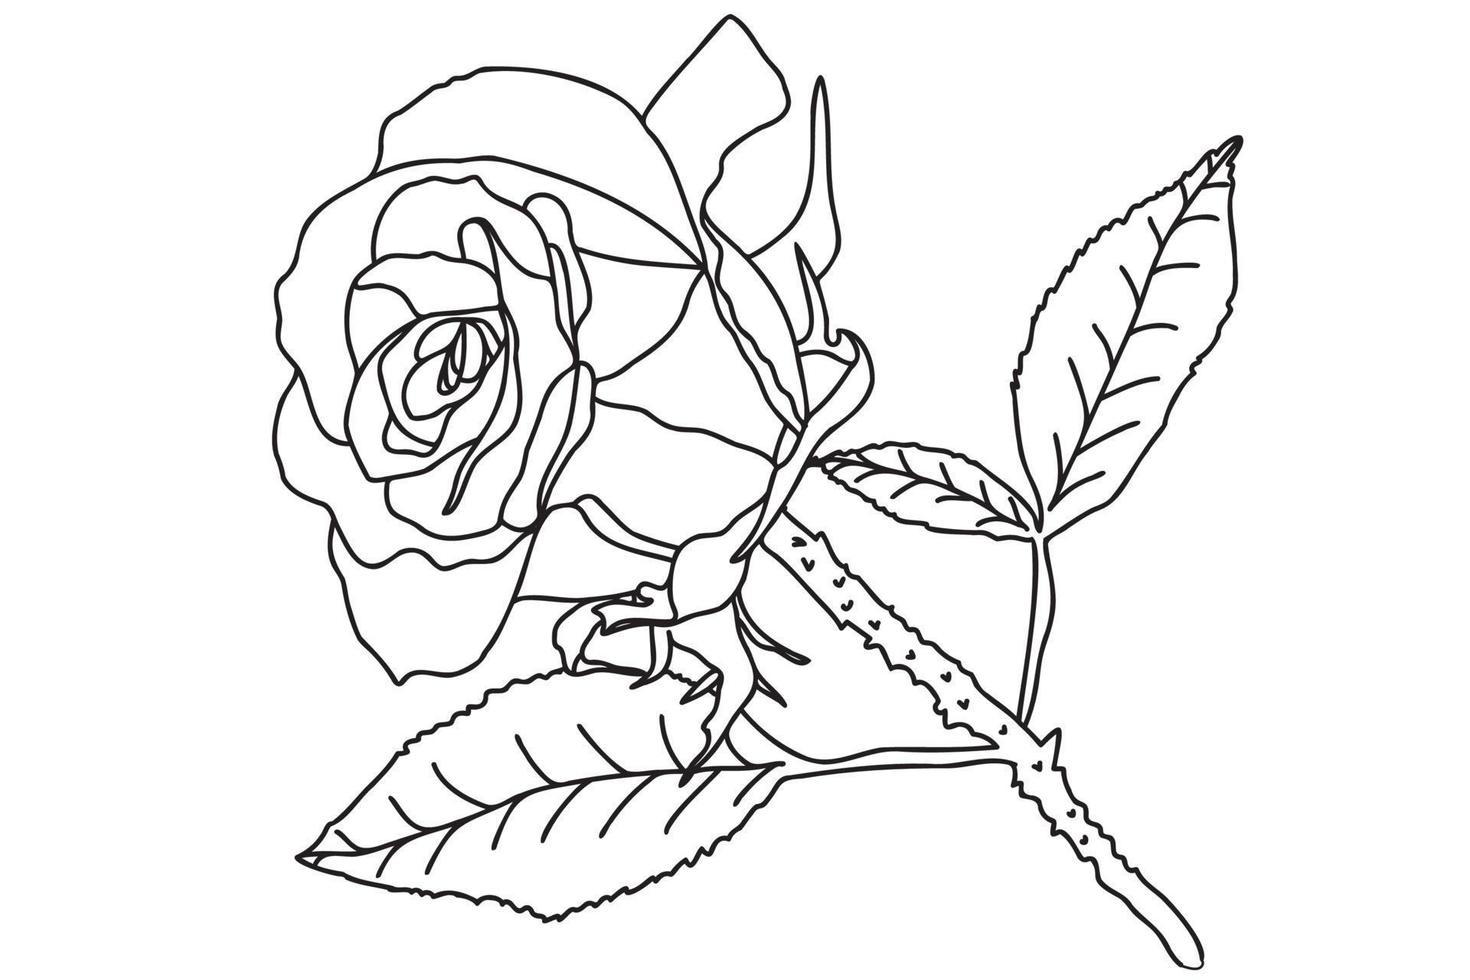 se dibuja una sola rosa con un contorno negro, está pensada para tatuajes,  impresiones, tarjetas, impresión de telas, 8 de marzo, san valentín,  etiquetas, logotipos y otras ocasiones. 9969924 Vector en Vecteezy